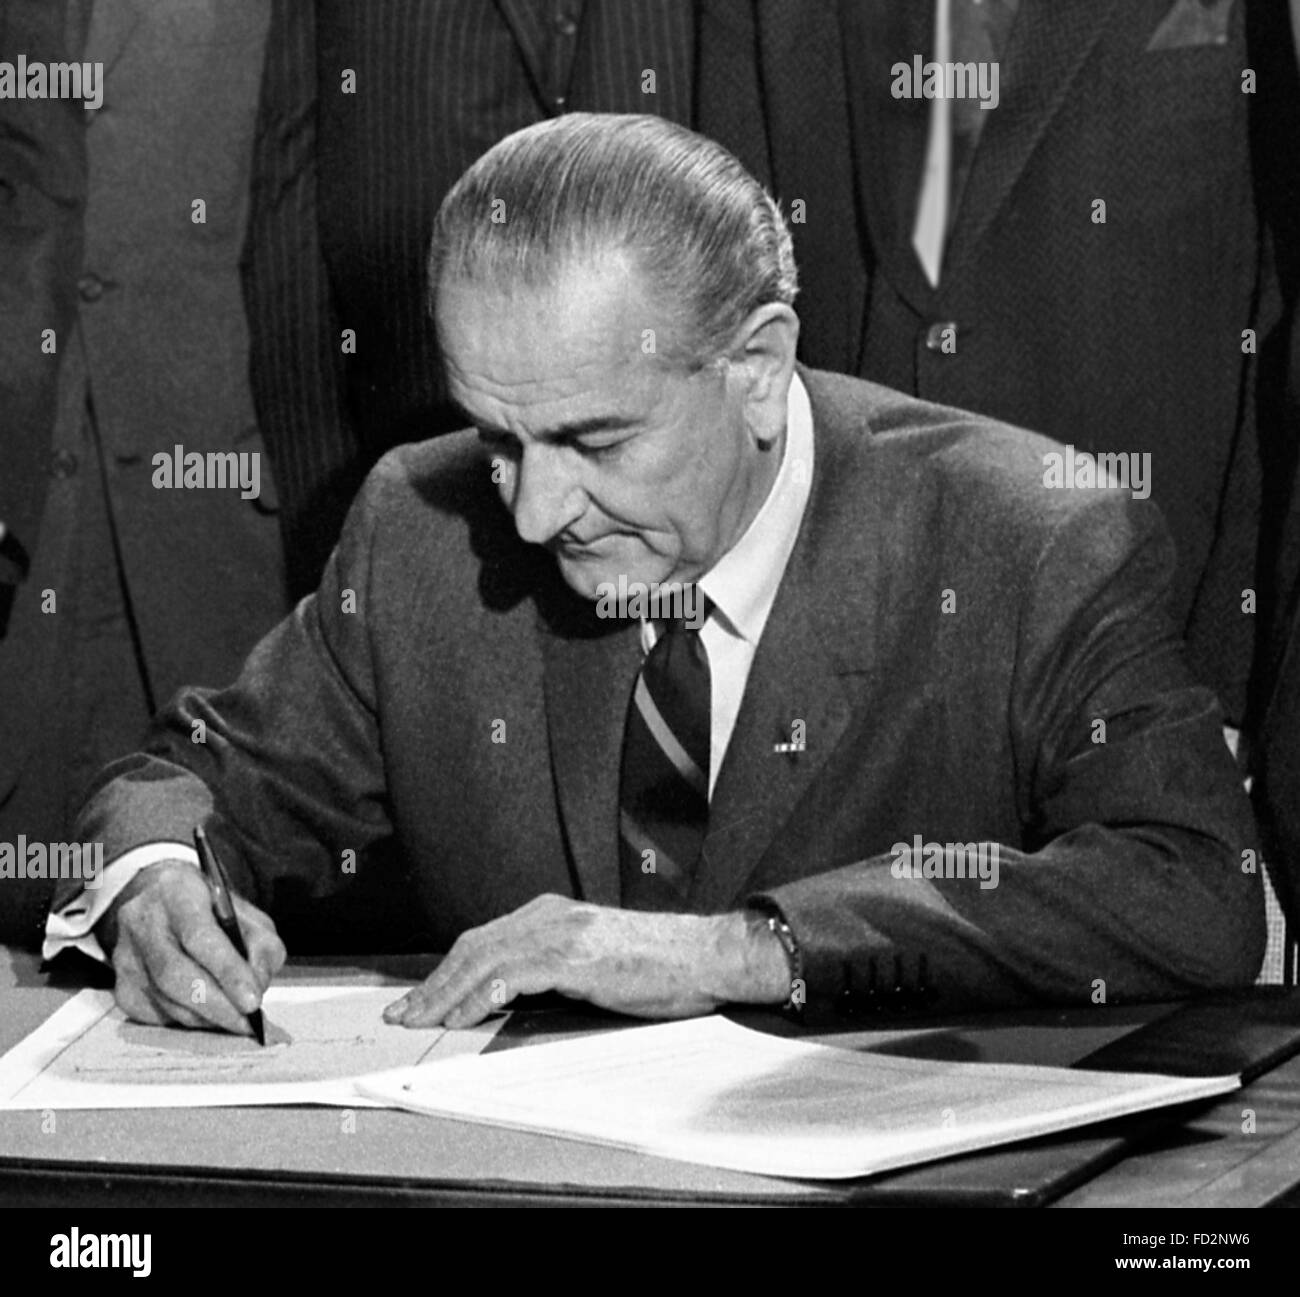 Lyndon B Johnson, le 36e Président des Etats-Unis, la signature du Civil Rights Act de 1968, 11 avril 1968. Photo par Warren K Leffler, U.S. News & World Report Magazine. Banque D'Images